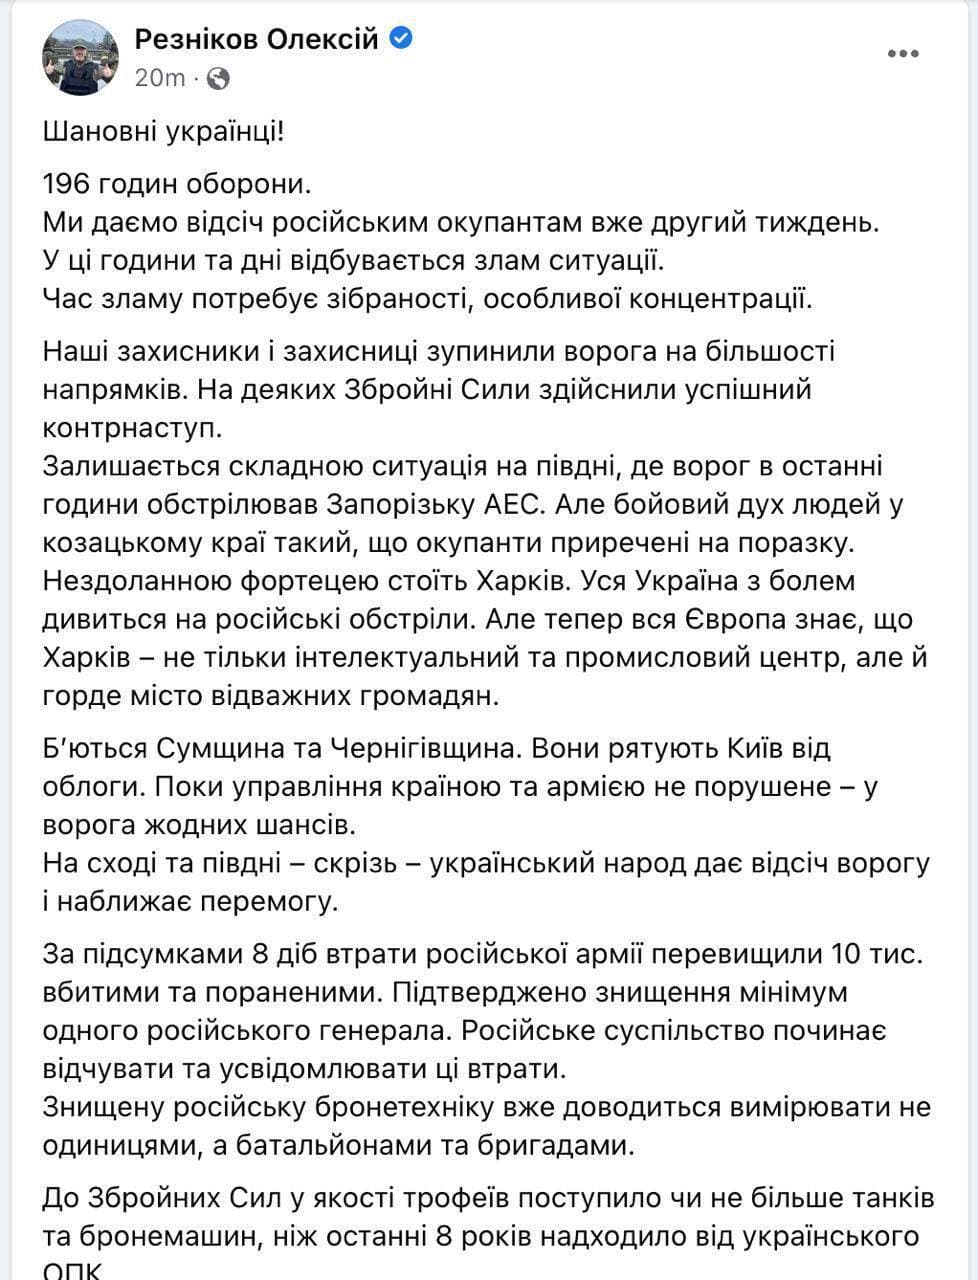 Резников в новом видеообращении заявил, что сейчас самая сложная ситуация в Сумской, Черниговской, Запорожской и Харьковской областях